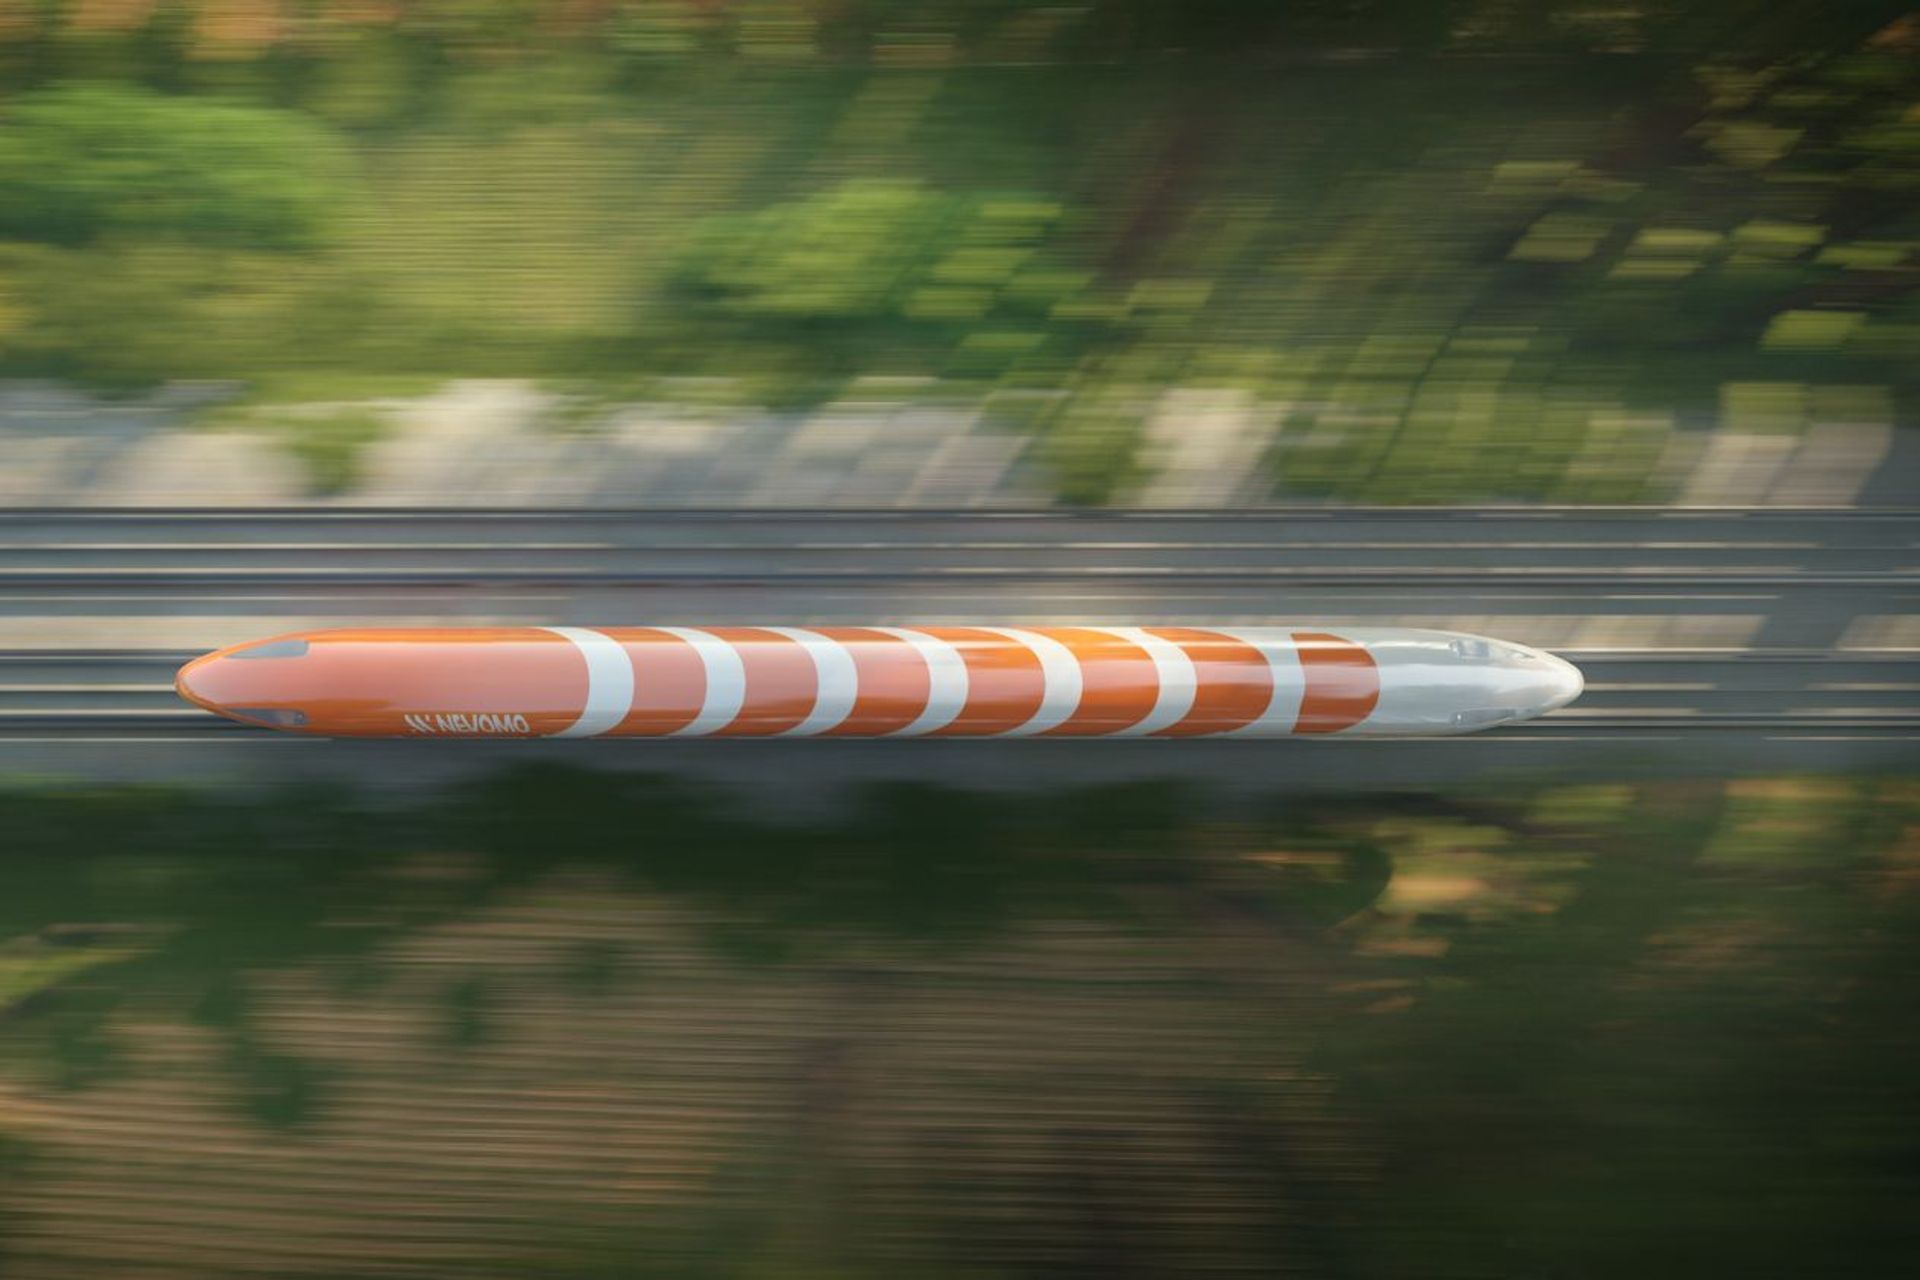 MagRail è un innovativo treno a levitazione magnetica, congegnato dalla società svizzero-polacca Nevomo, capace di funzionare all'interno dei corridoi ferroviari esistenti